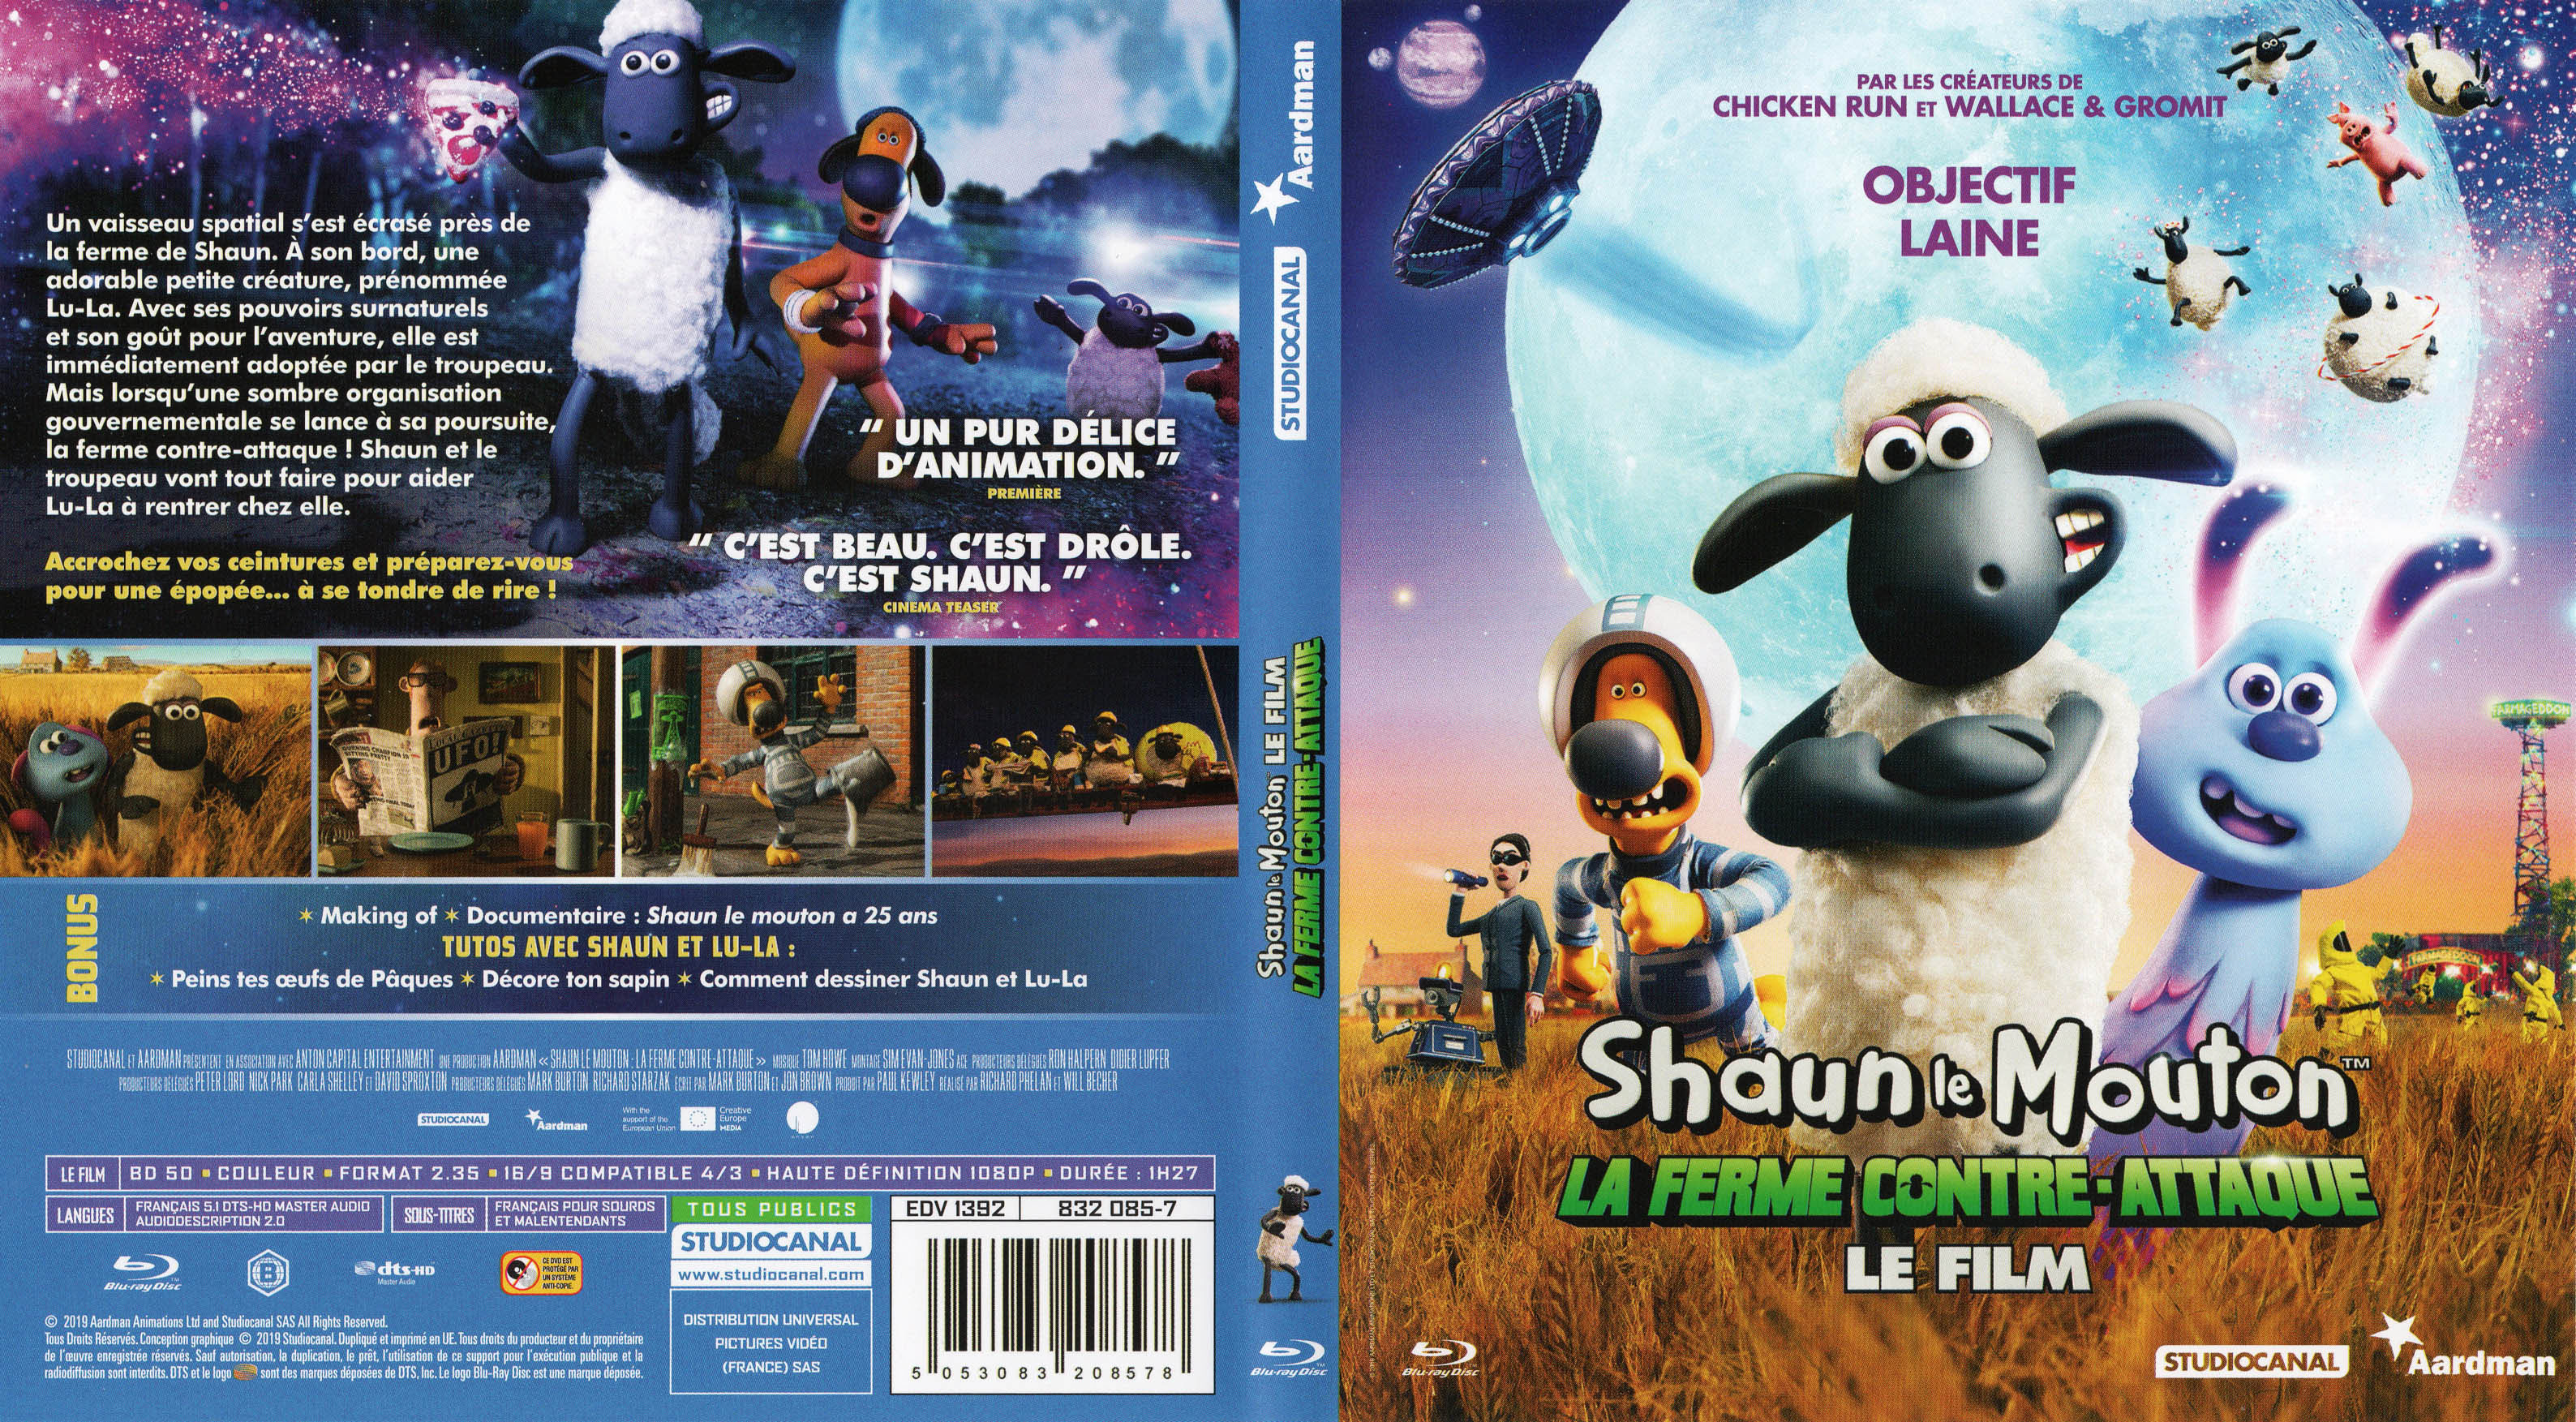 Jaquette DVD Shaun le mouton La ferme contre-attaque (BLU-RAY)